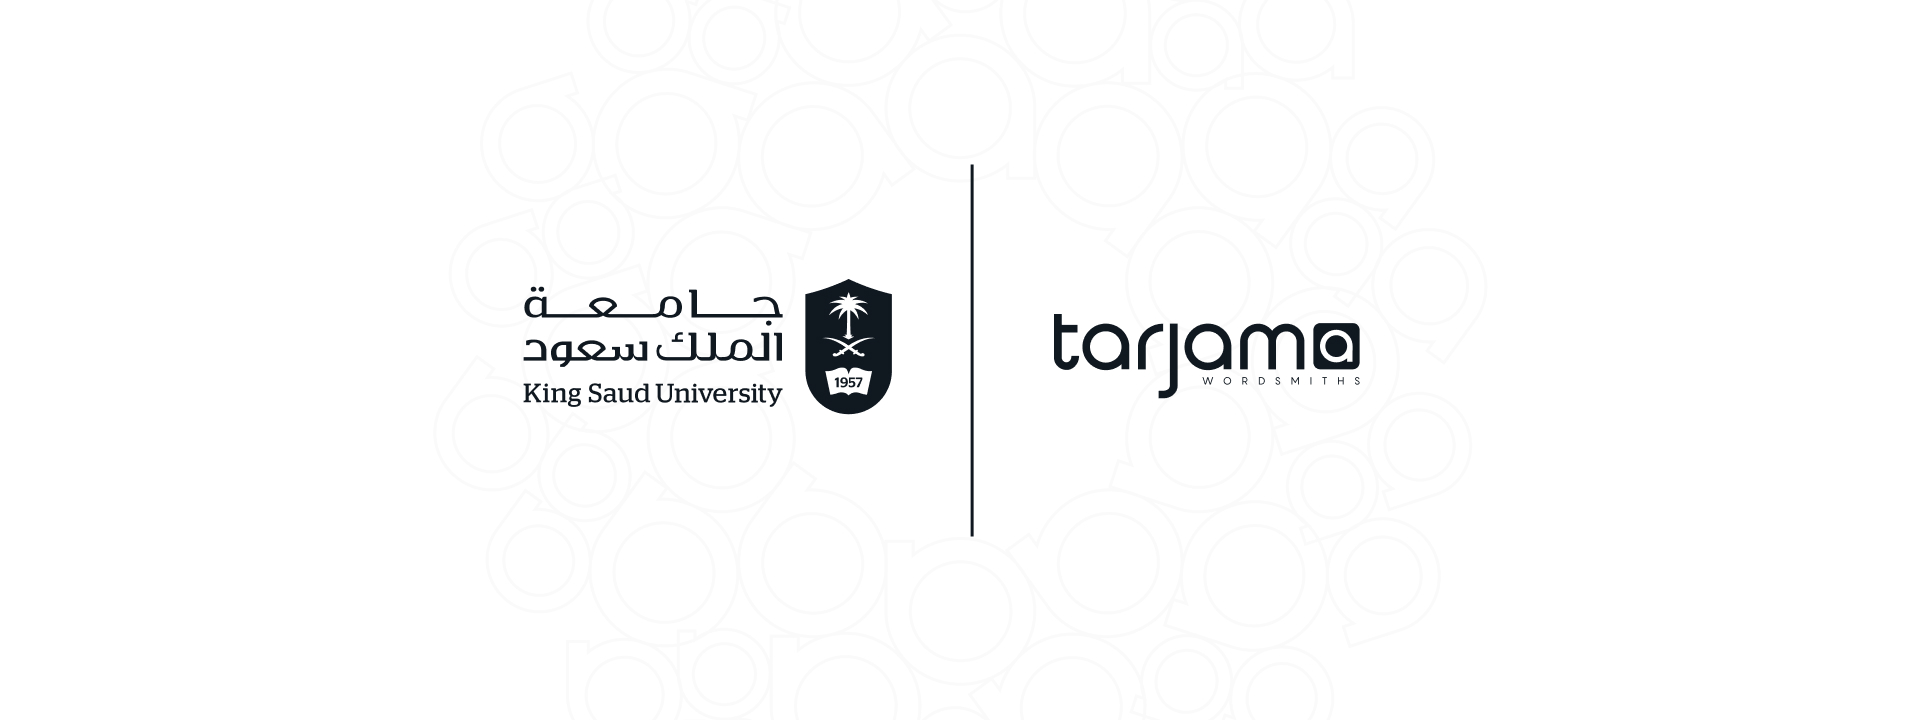 شركة “ترجمة” وجامعة الملك سعود يوحدان جهودهما لتنمية مهارات المترجمين في سوق العمل السعودي